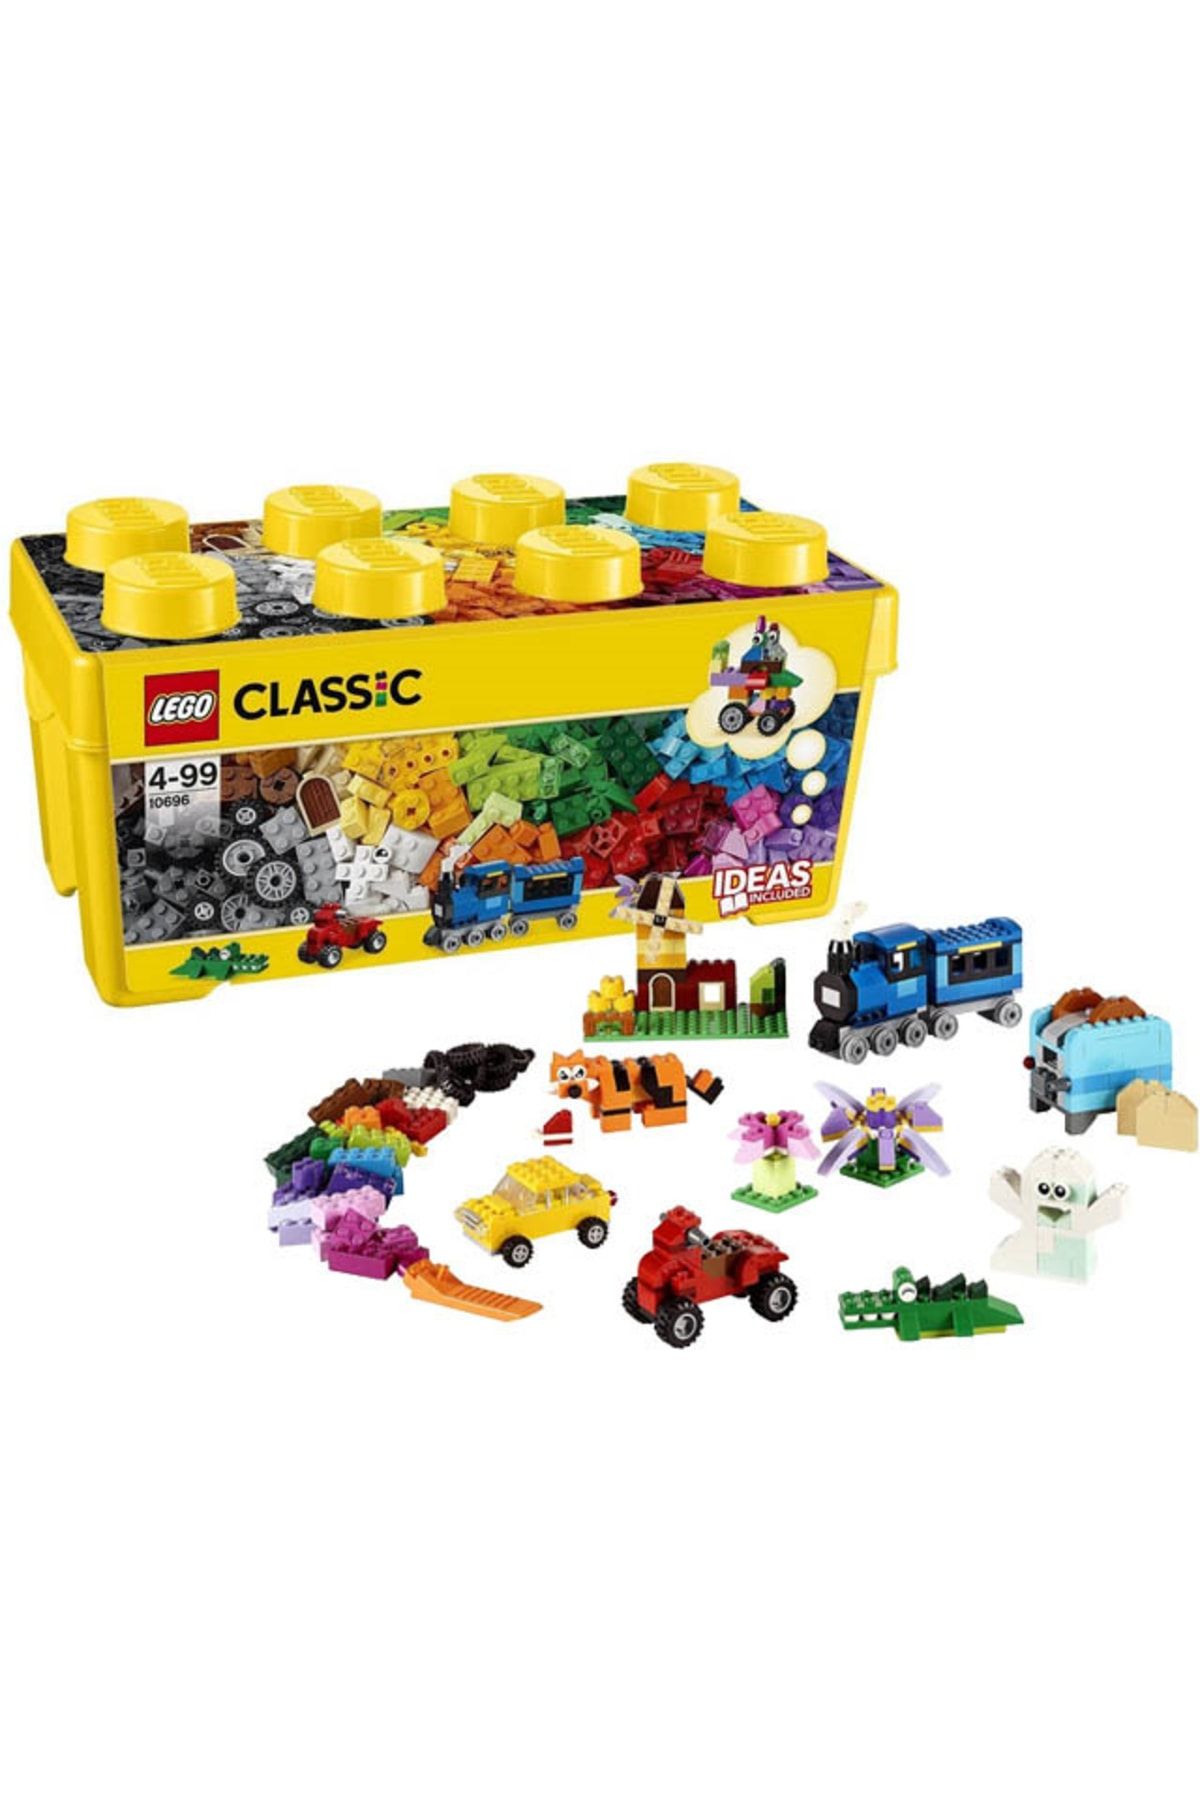 LEGO Classic Orta Boy Yaratıcı Yapım Kutusu 10696 - Yaratıcı Çocuklar Için Oyuncak Yapım S (484 PARÇA)